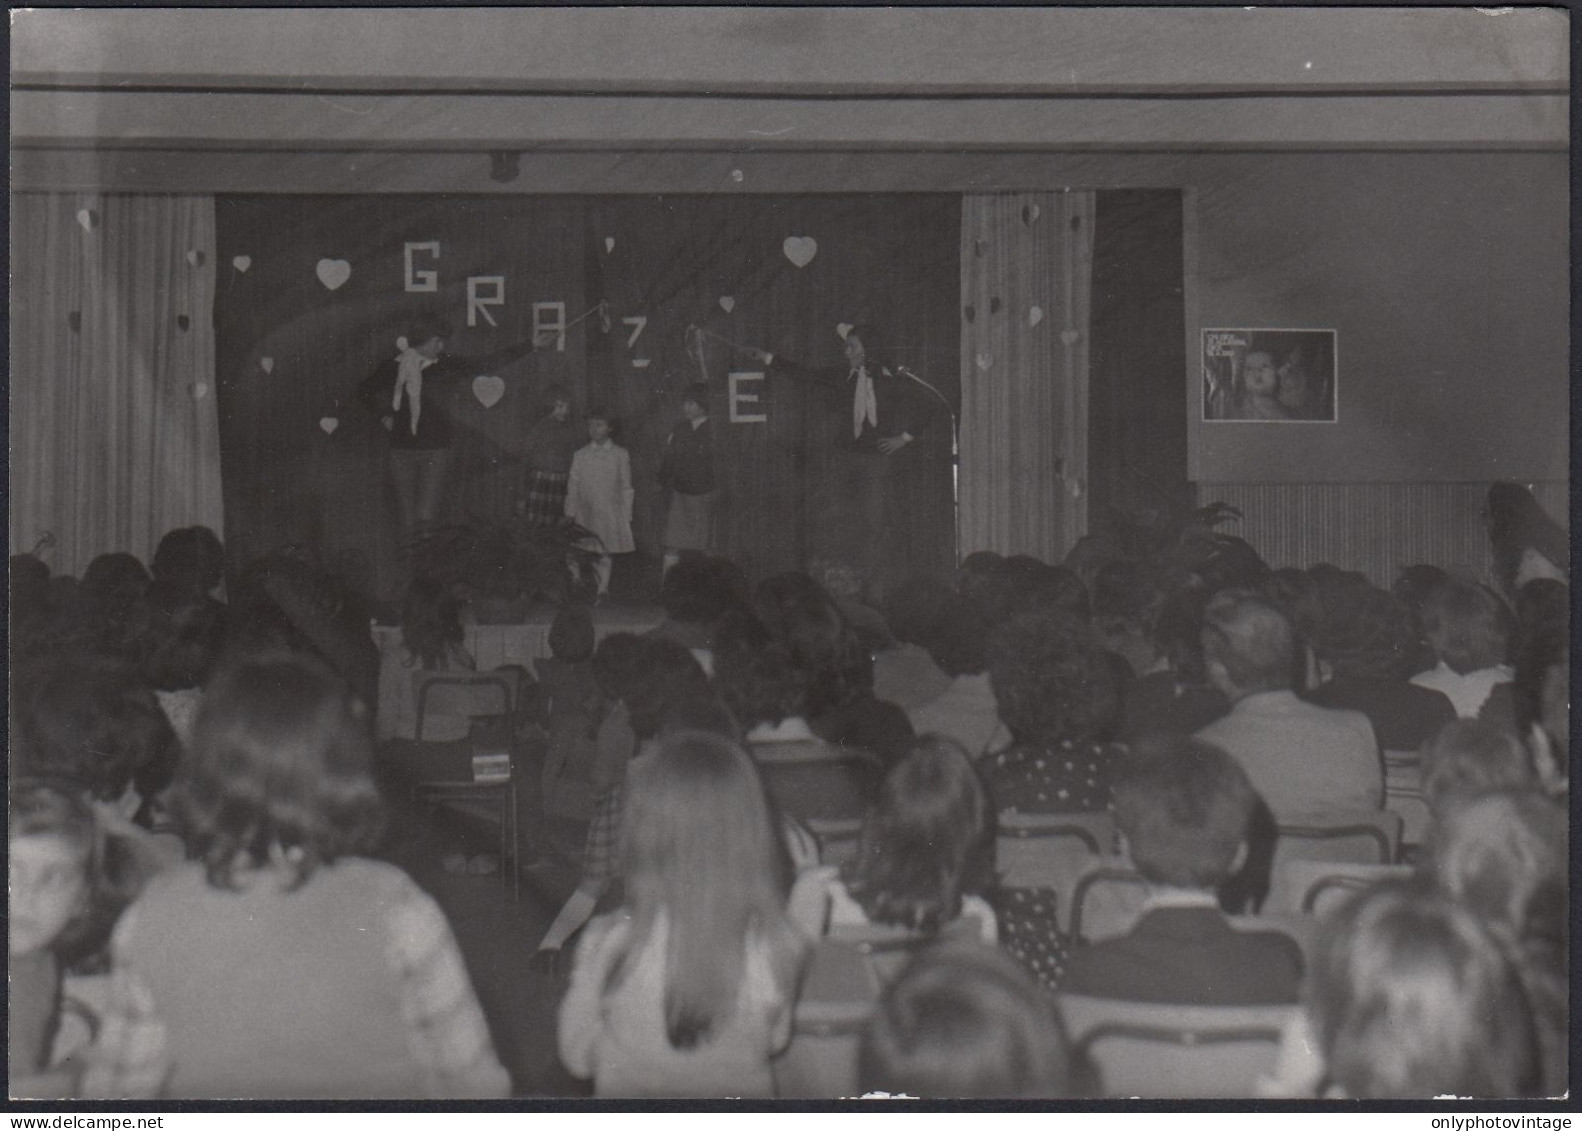 Legnano 1977 - Scena Di Una Rappresentazione Teatrale - Fotografia Epoca - Places